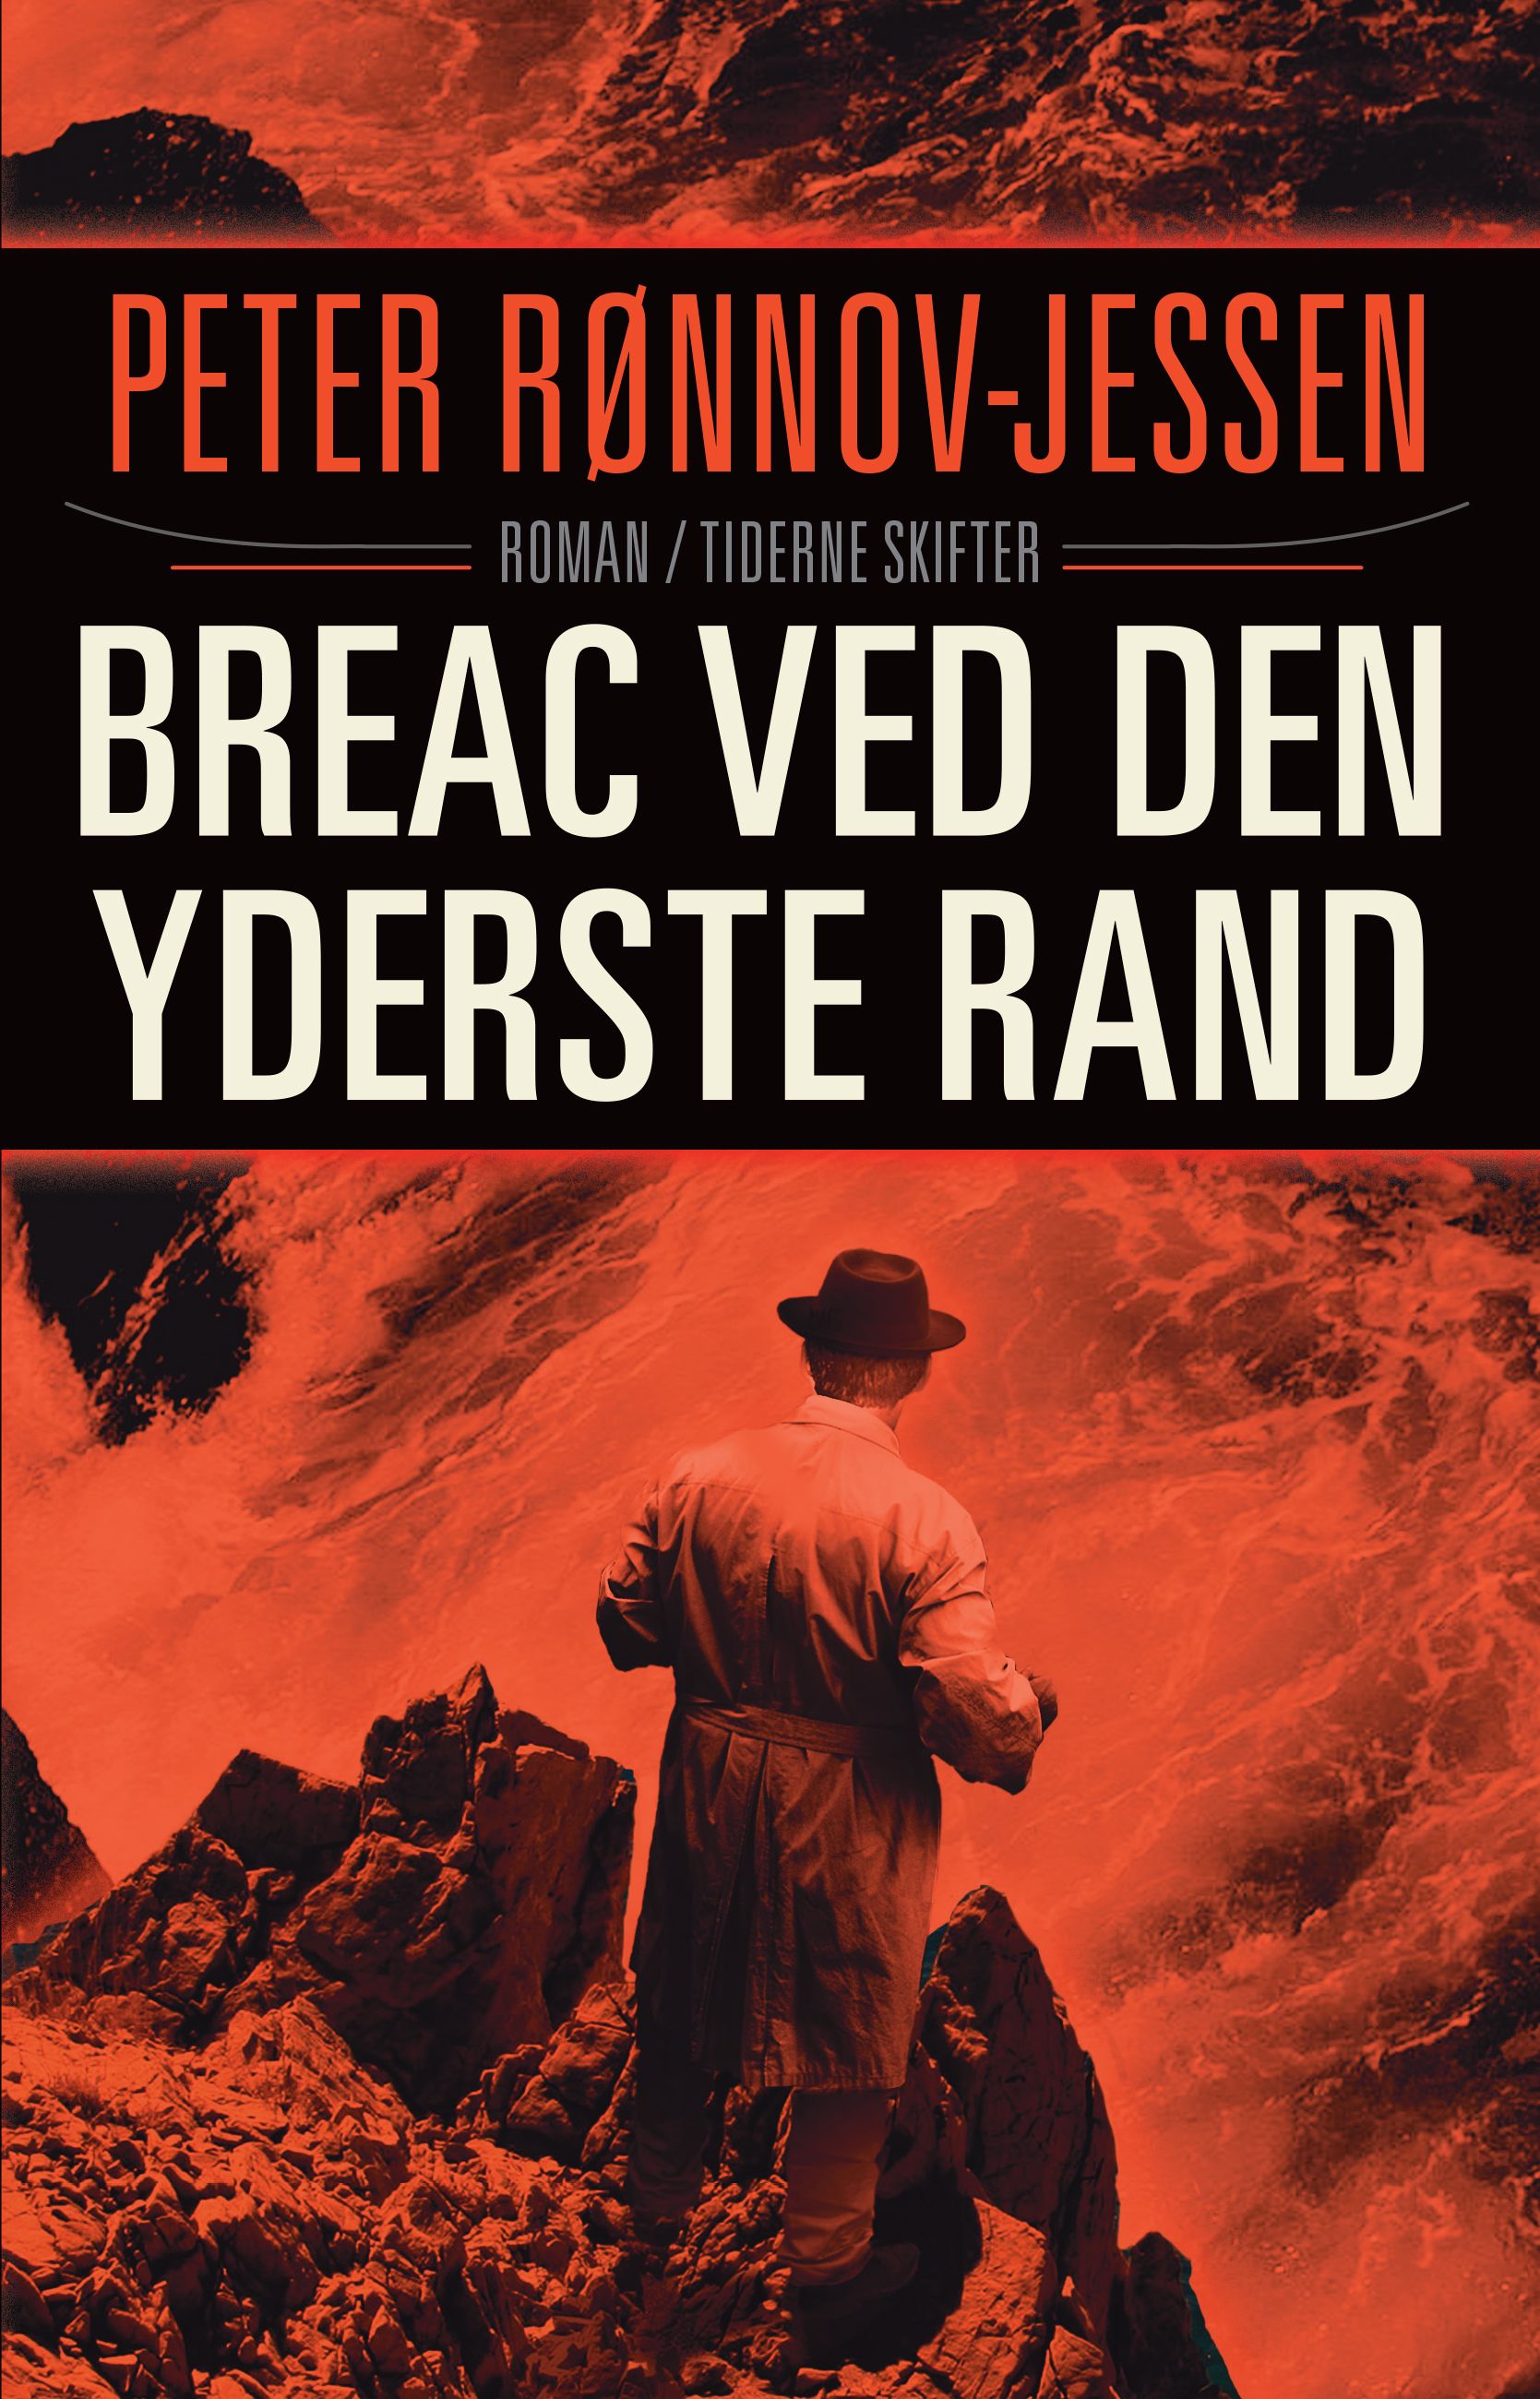 Bréac ved den yderst rand, eBook by PETER RØNNOV-JESSEN